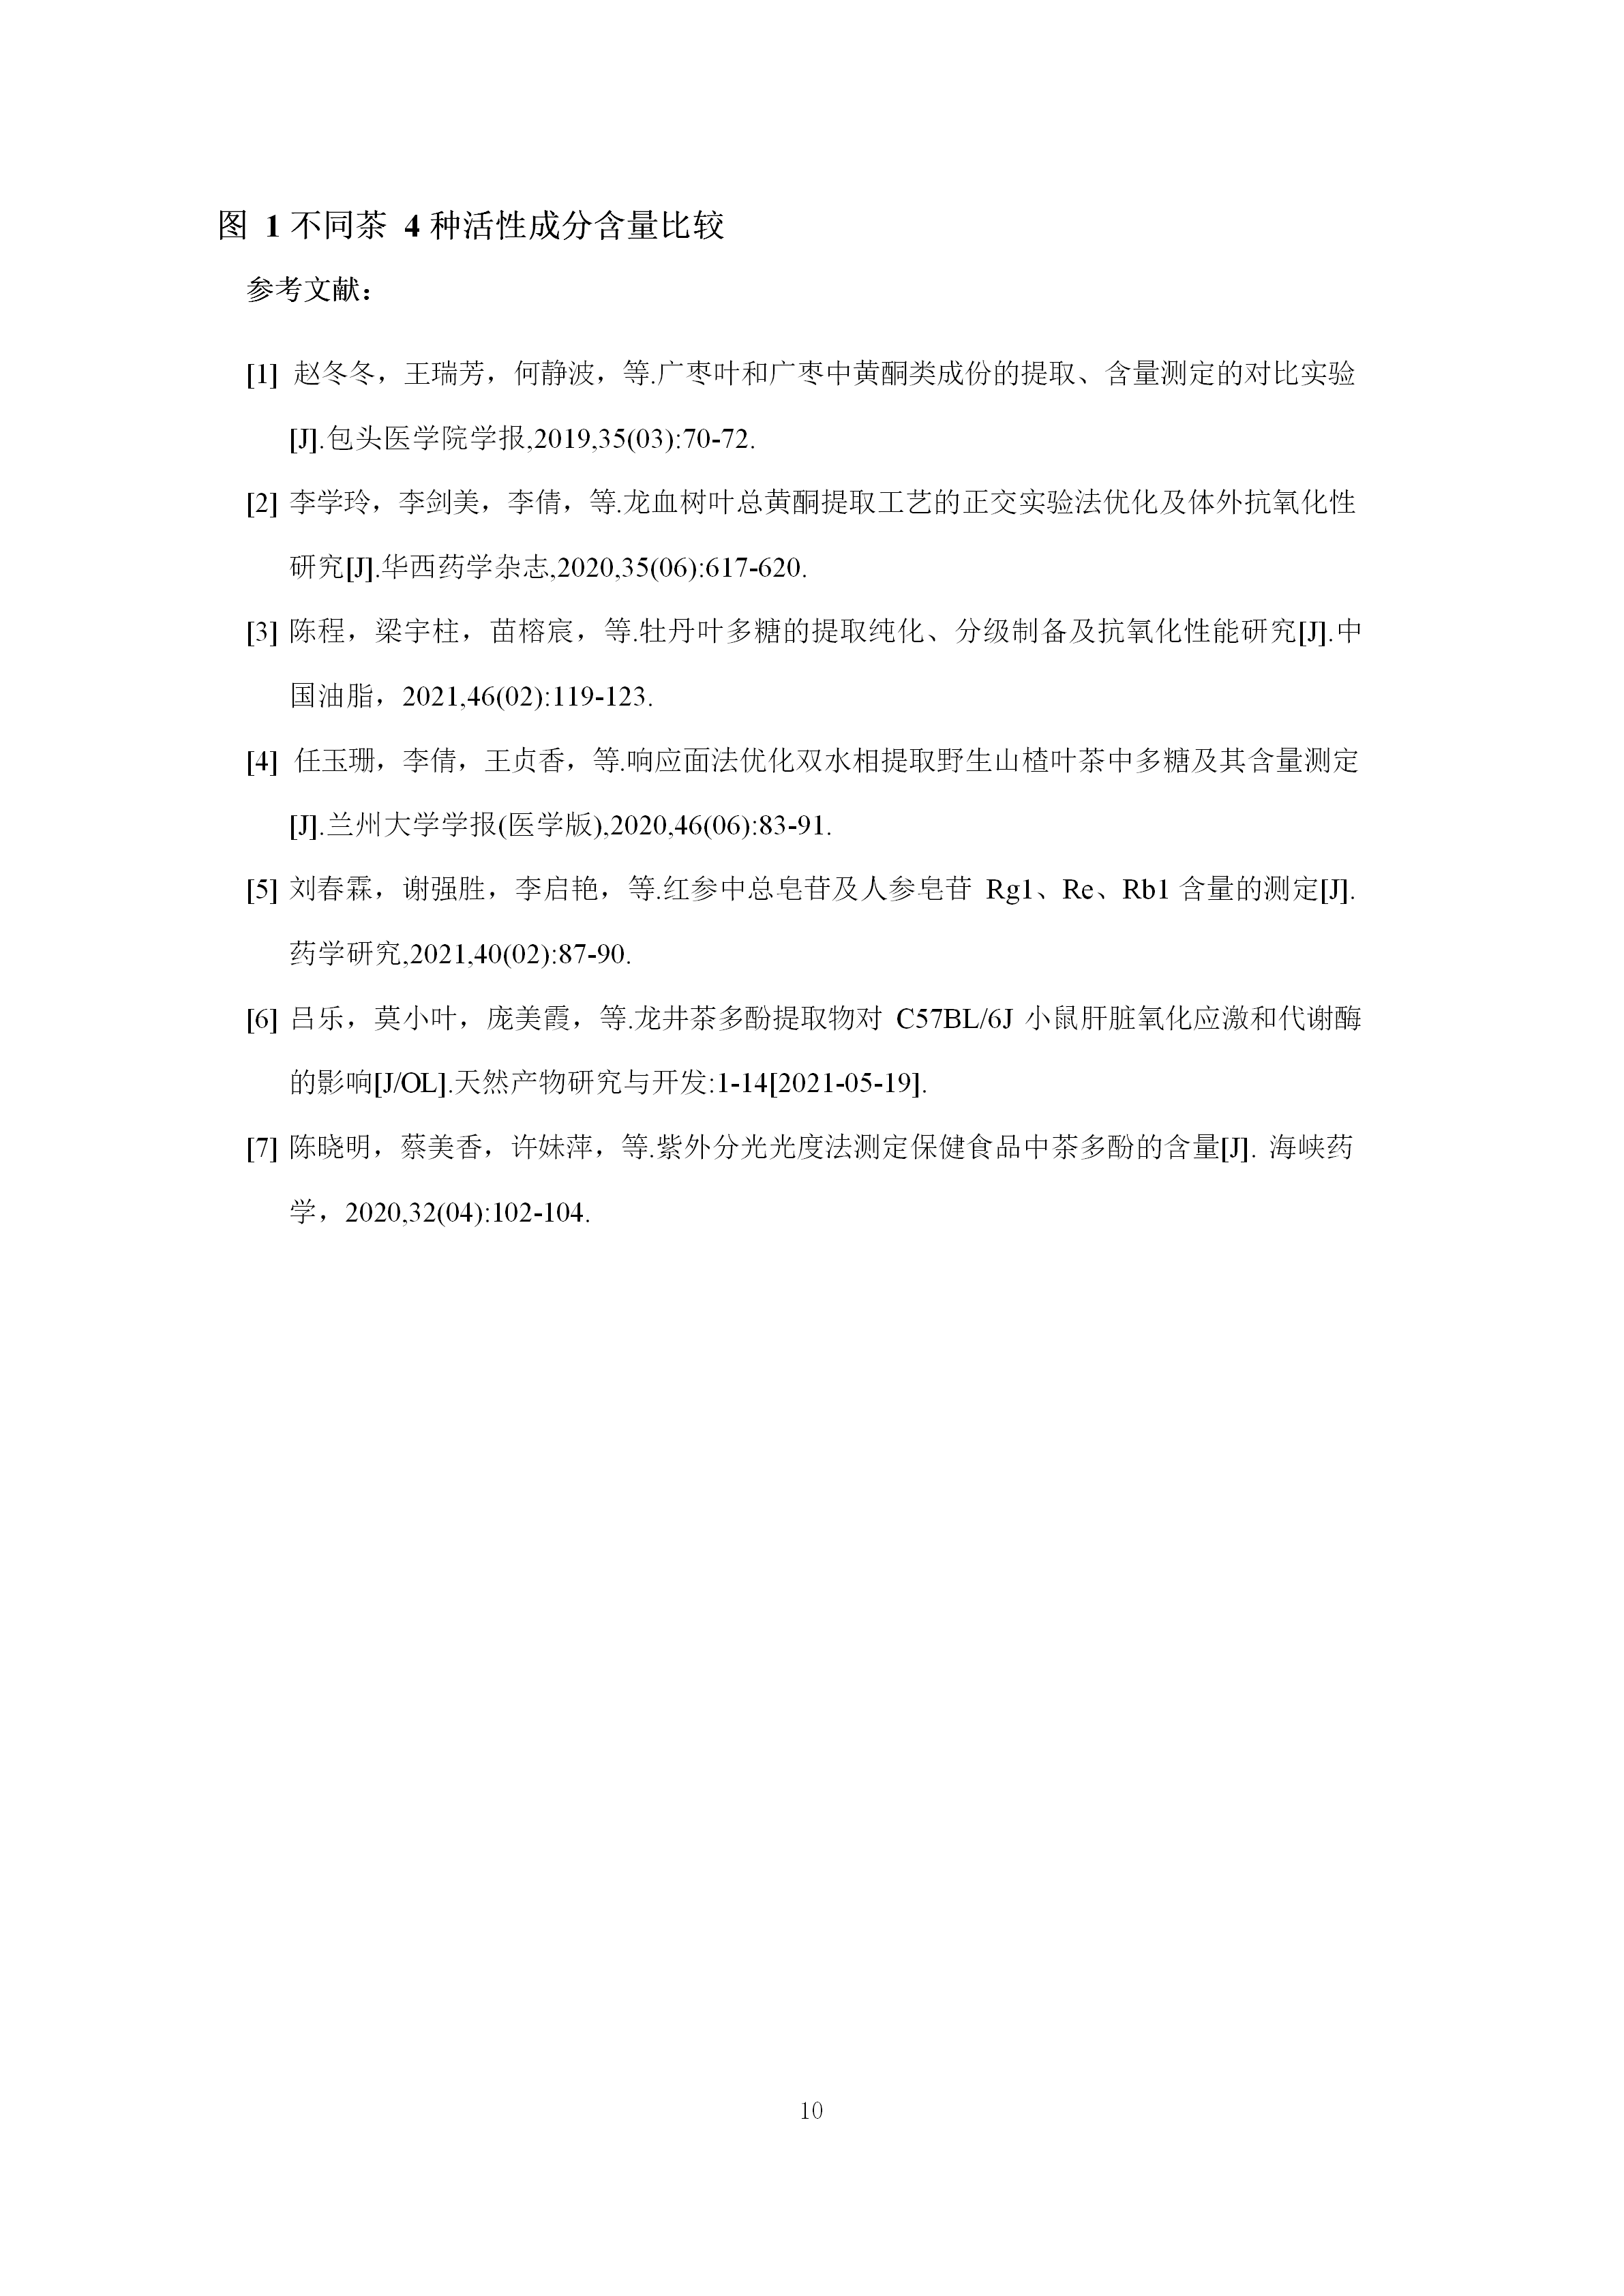 阳府井枣芽红茶功效学试验技术报告8.6.2(1)(1)(1)(1)(1)(1)_13.png